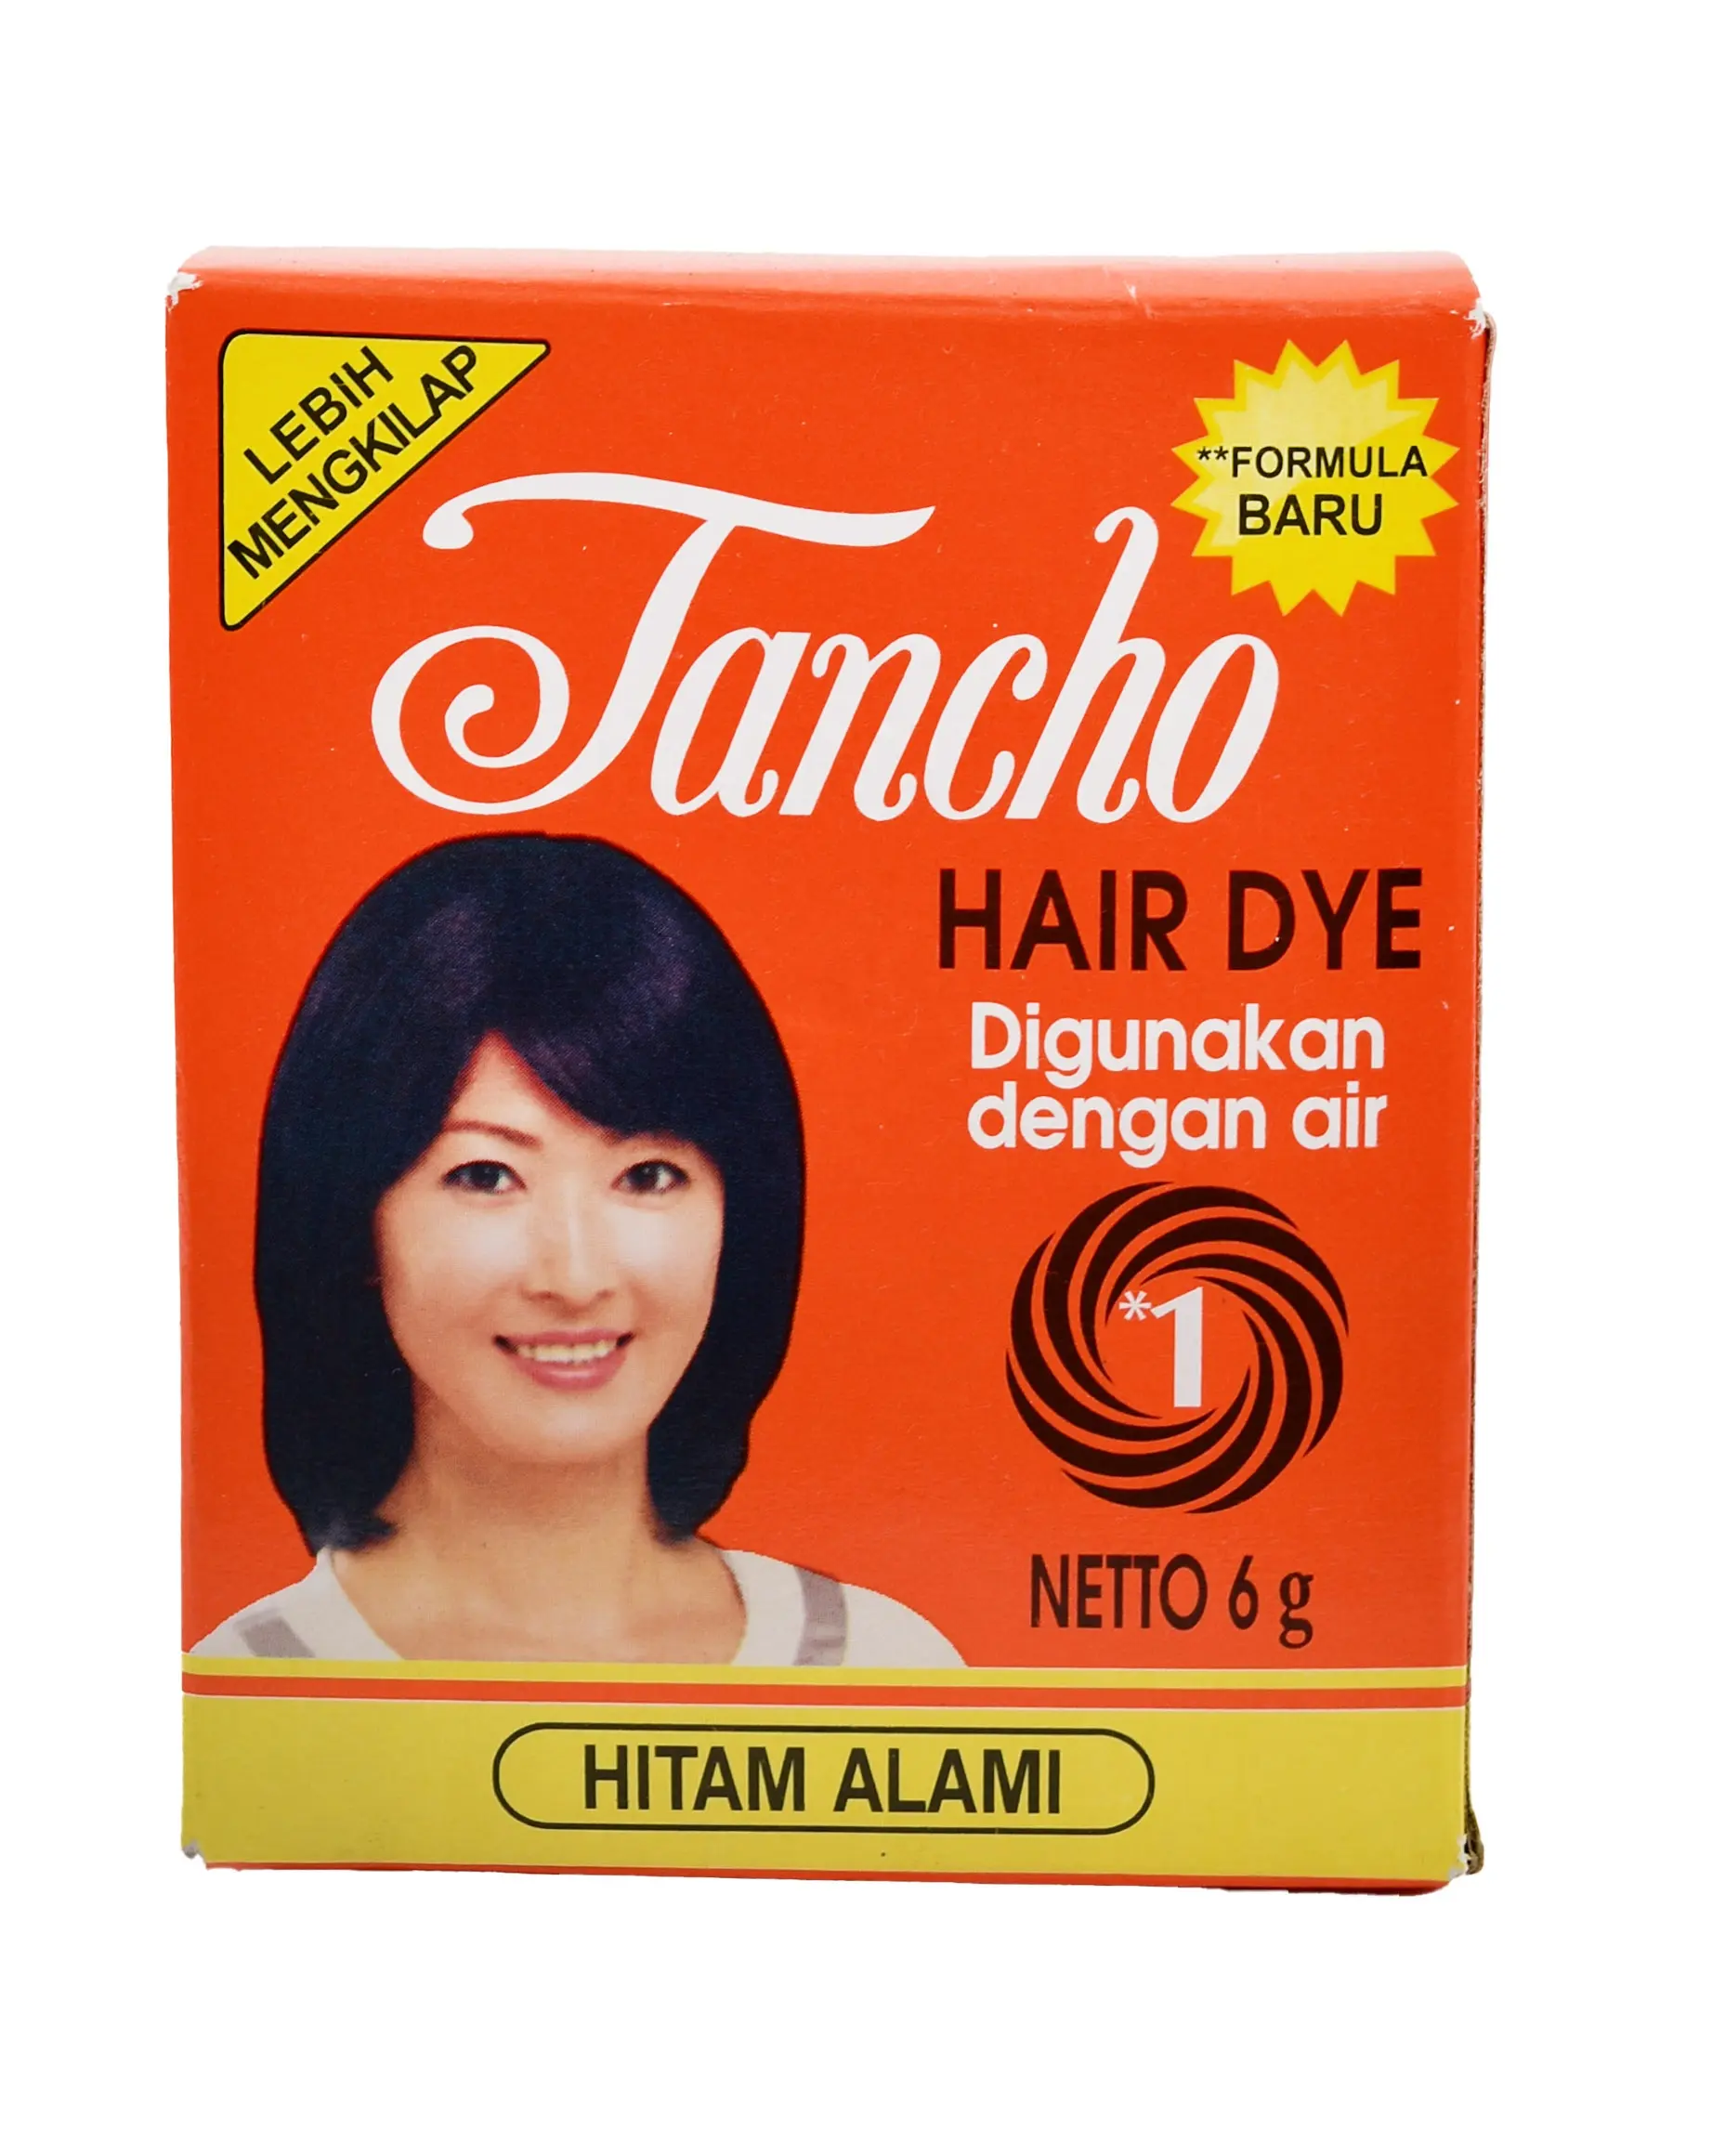 مسحوق حناء لصبغ الشعر من TANCHO - منتج أصلي من أندونيسيا